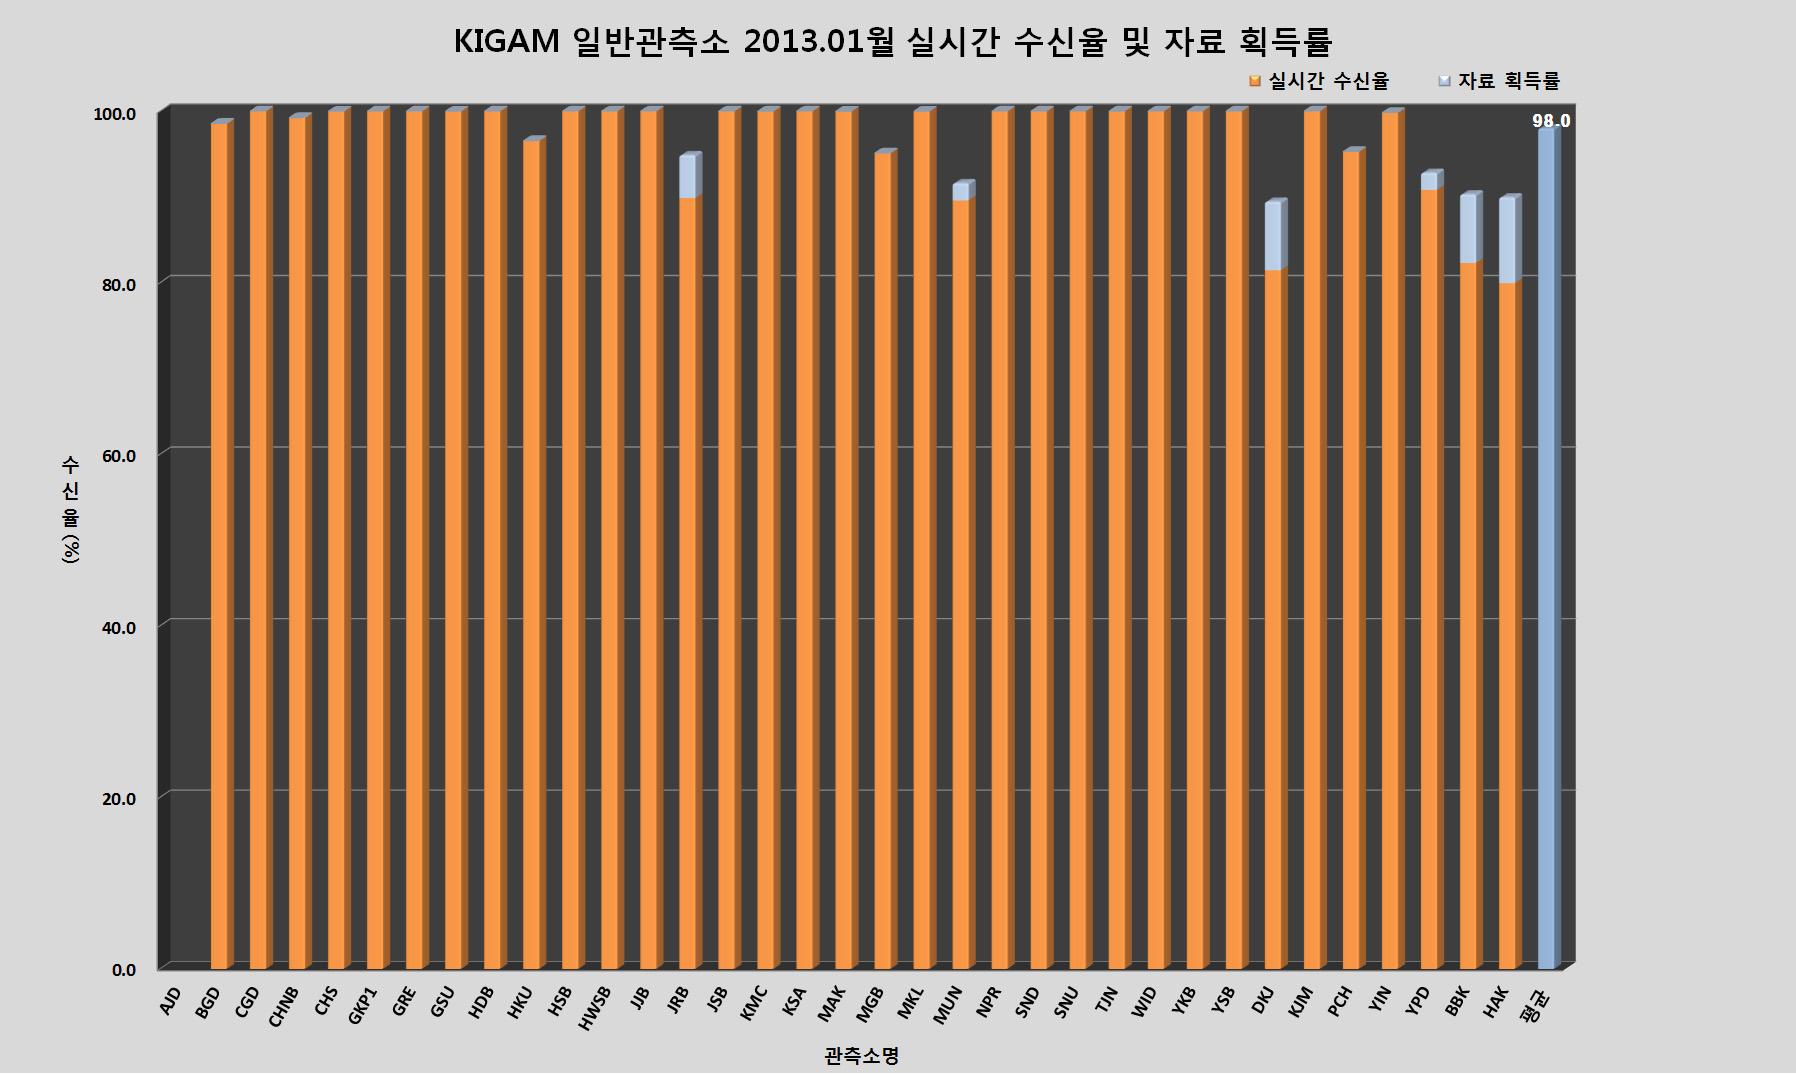 KIGAM 일반관측소 2013년 1월 실시간 수신율 및 자료 획득률